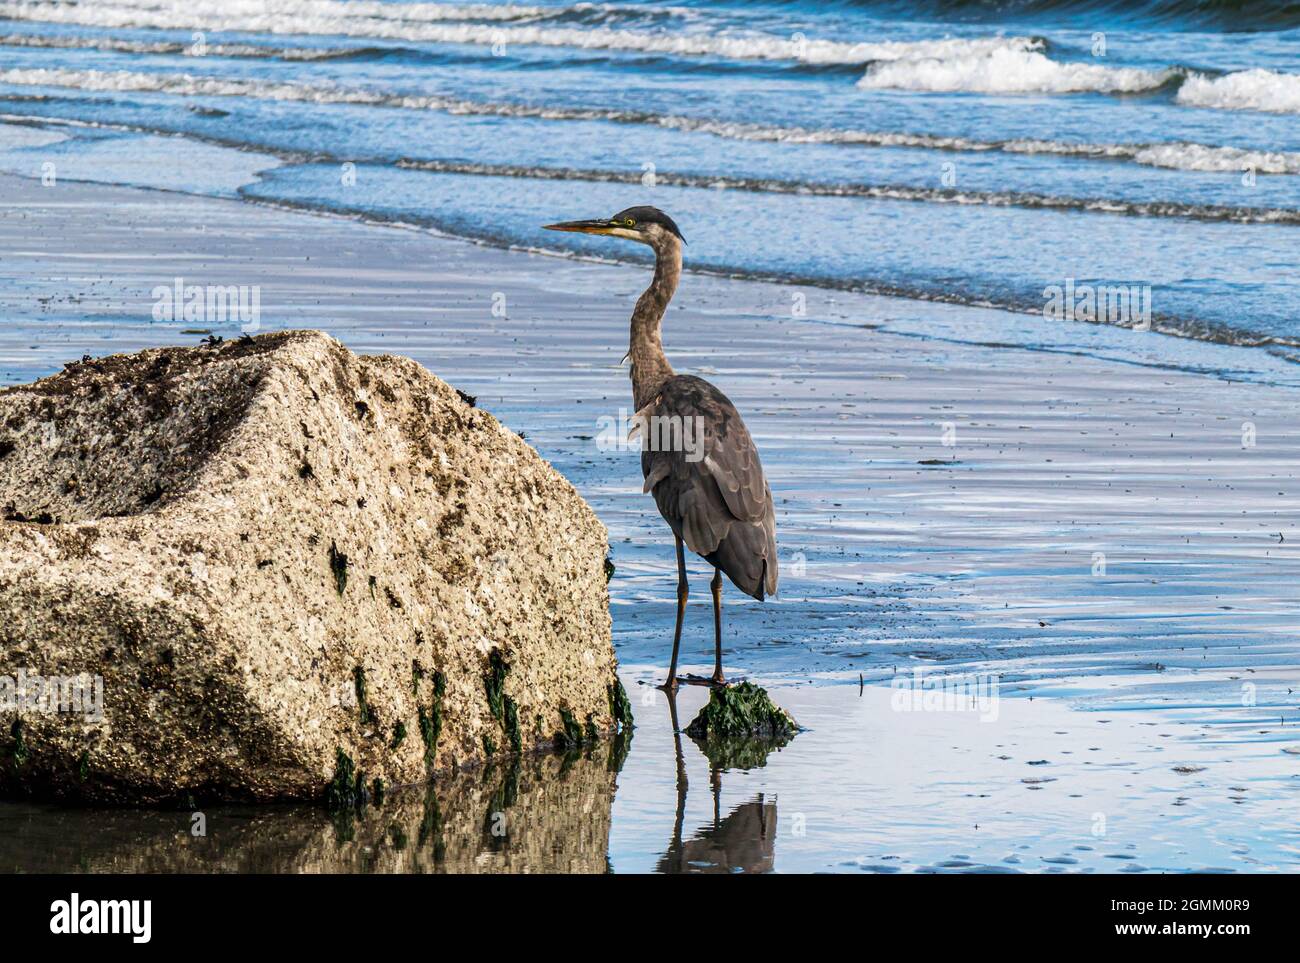 Ardea Herodias oder Great Blue Heron, der an einem Strand neben einem Granitfelsen steht. Plätschernder Wellengang, blaues Wasser, Reflexion am nassen Sandstrand. Stockfoto